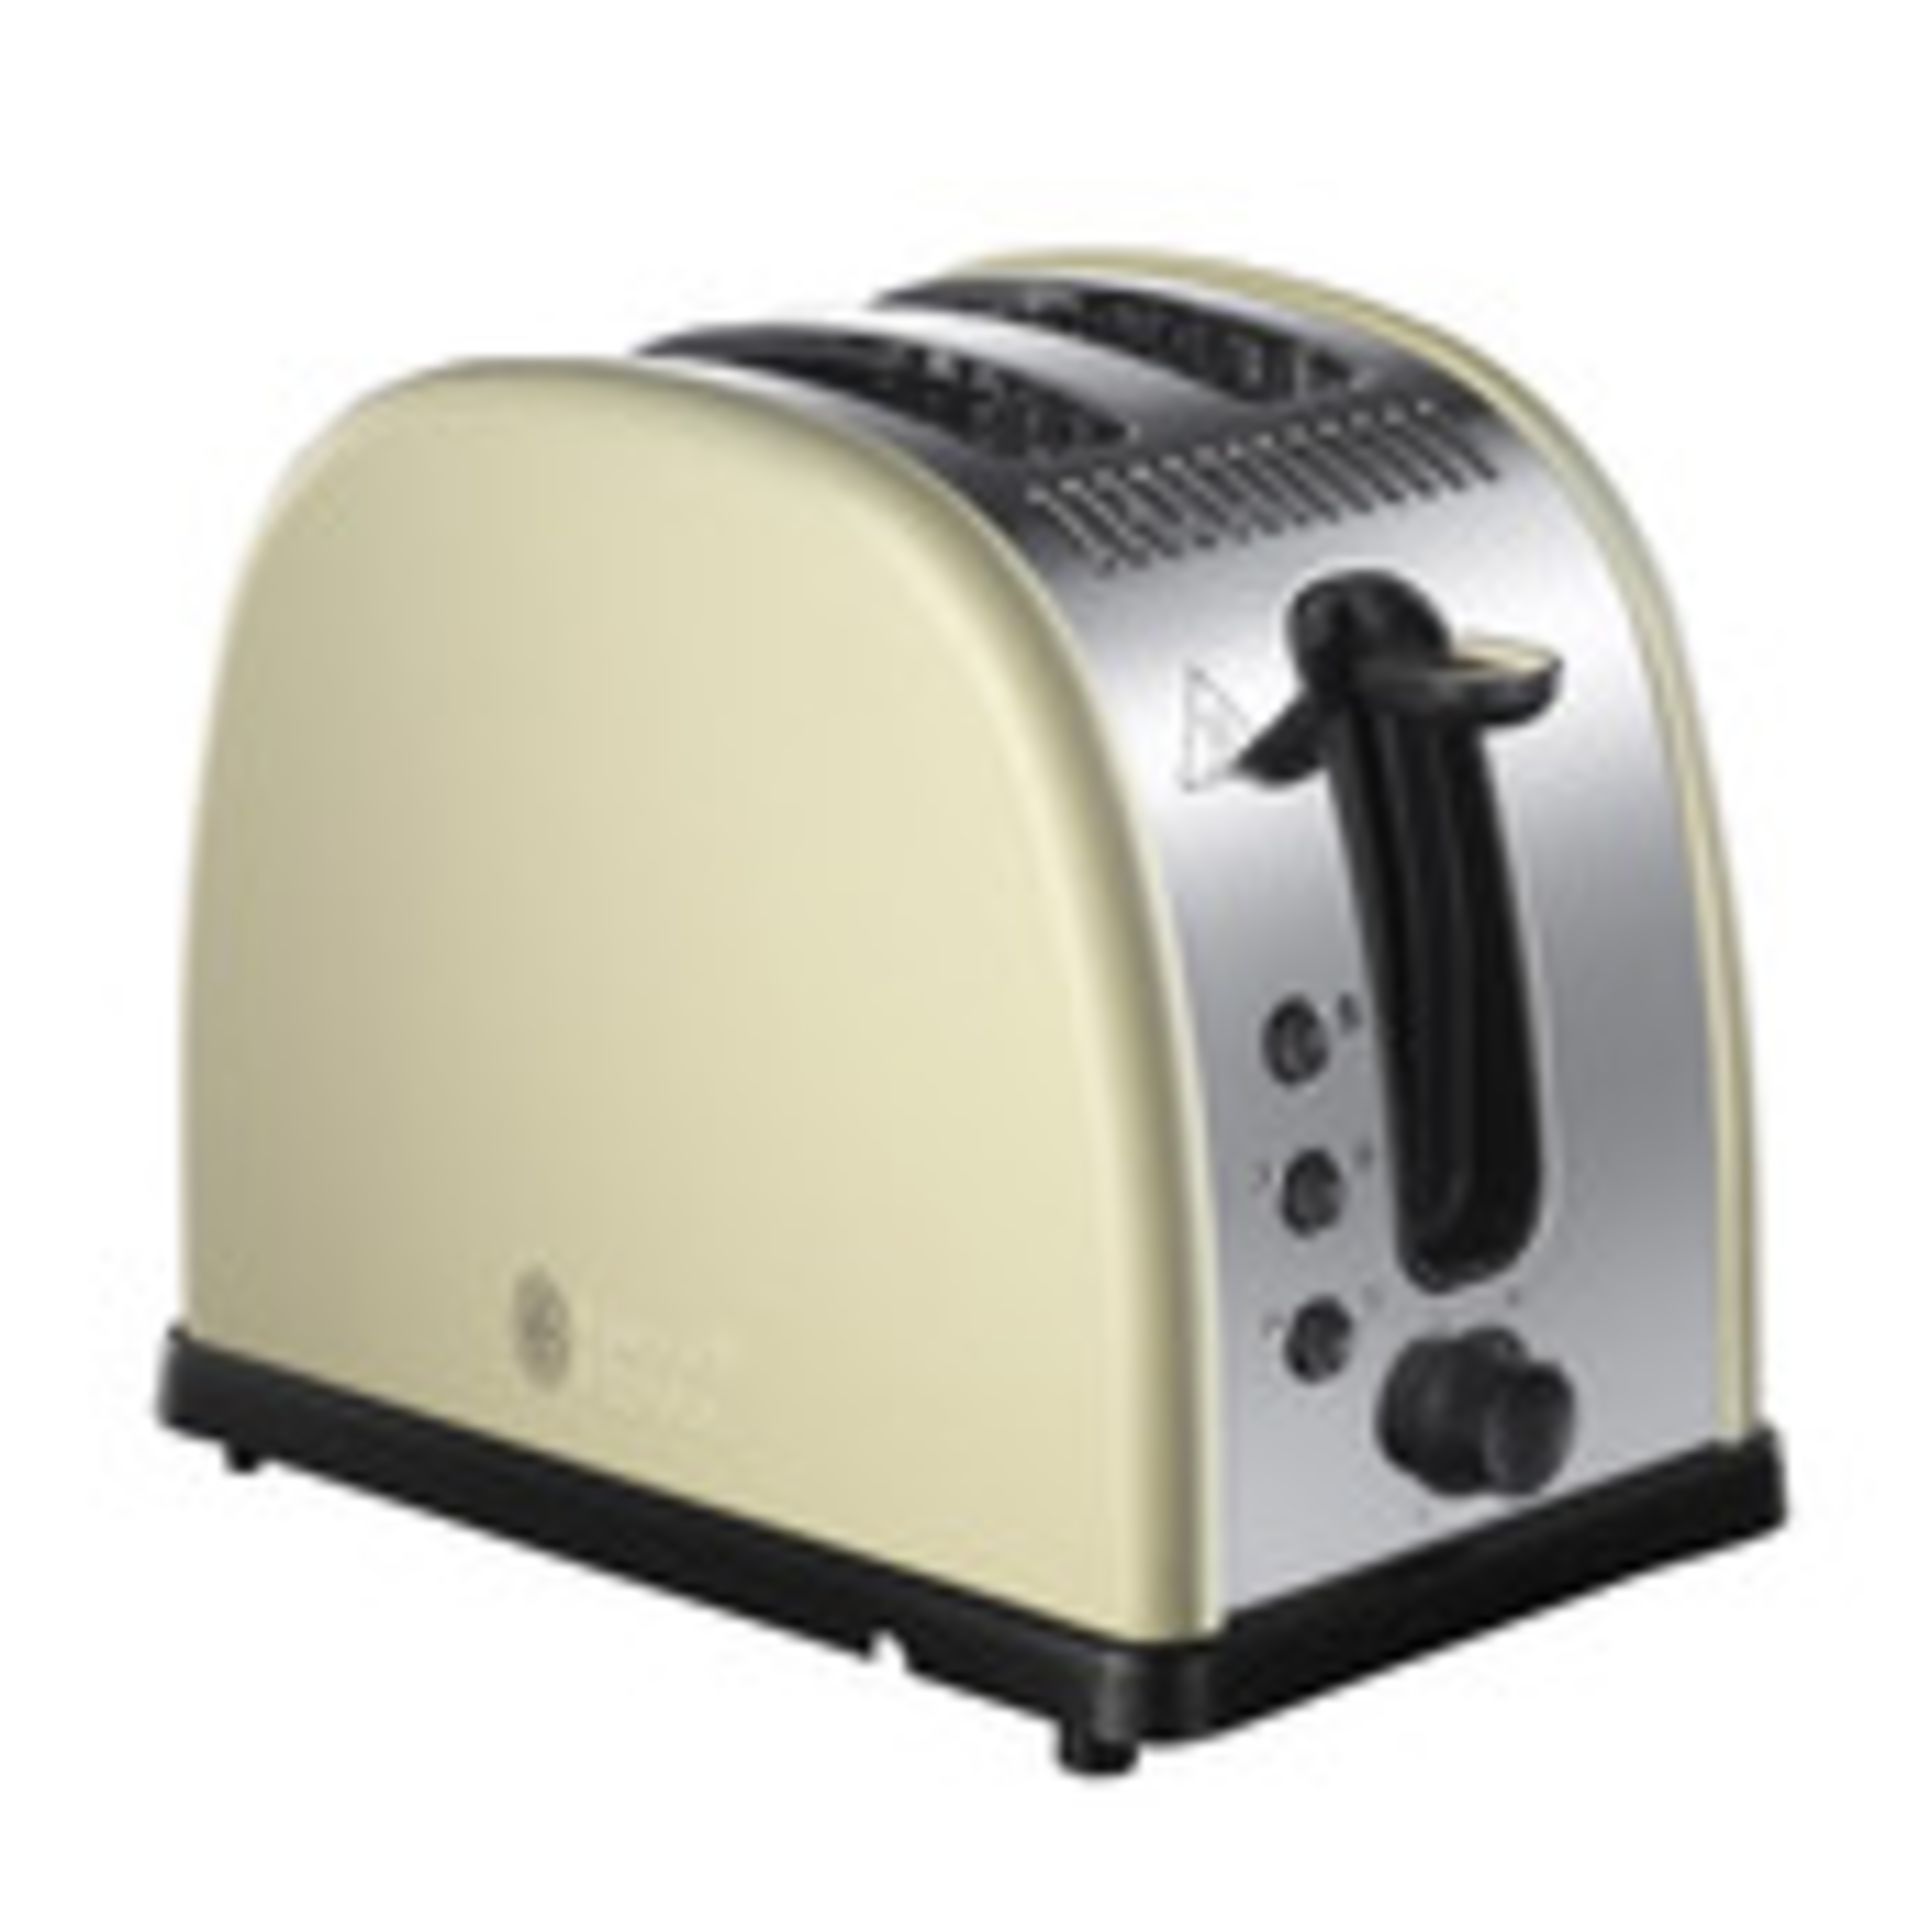 2 x Russell Hobbs Toasters (Sku: 21292)